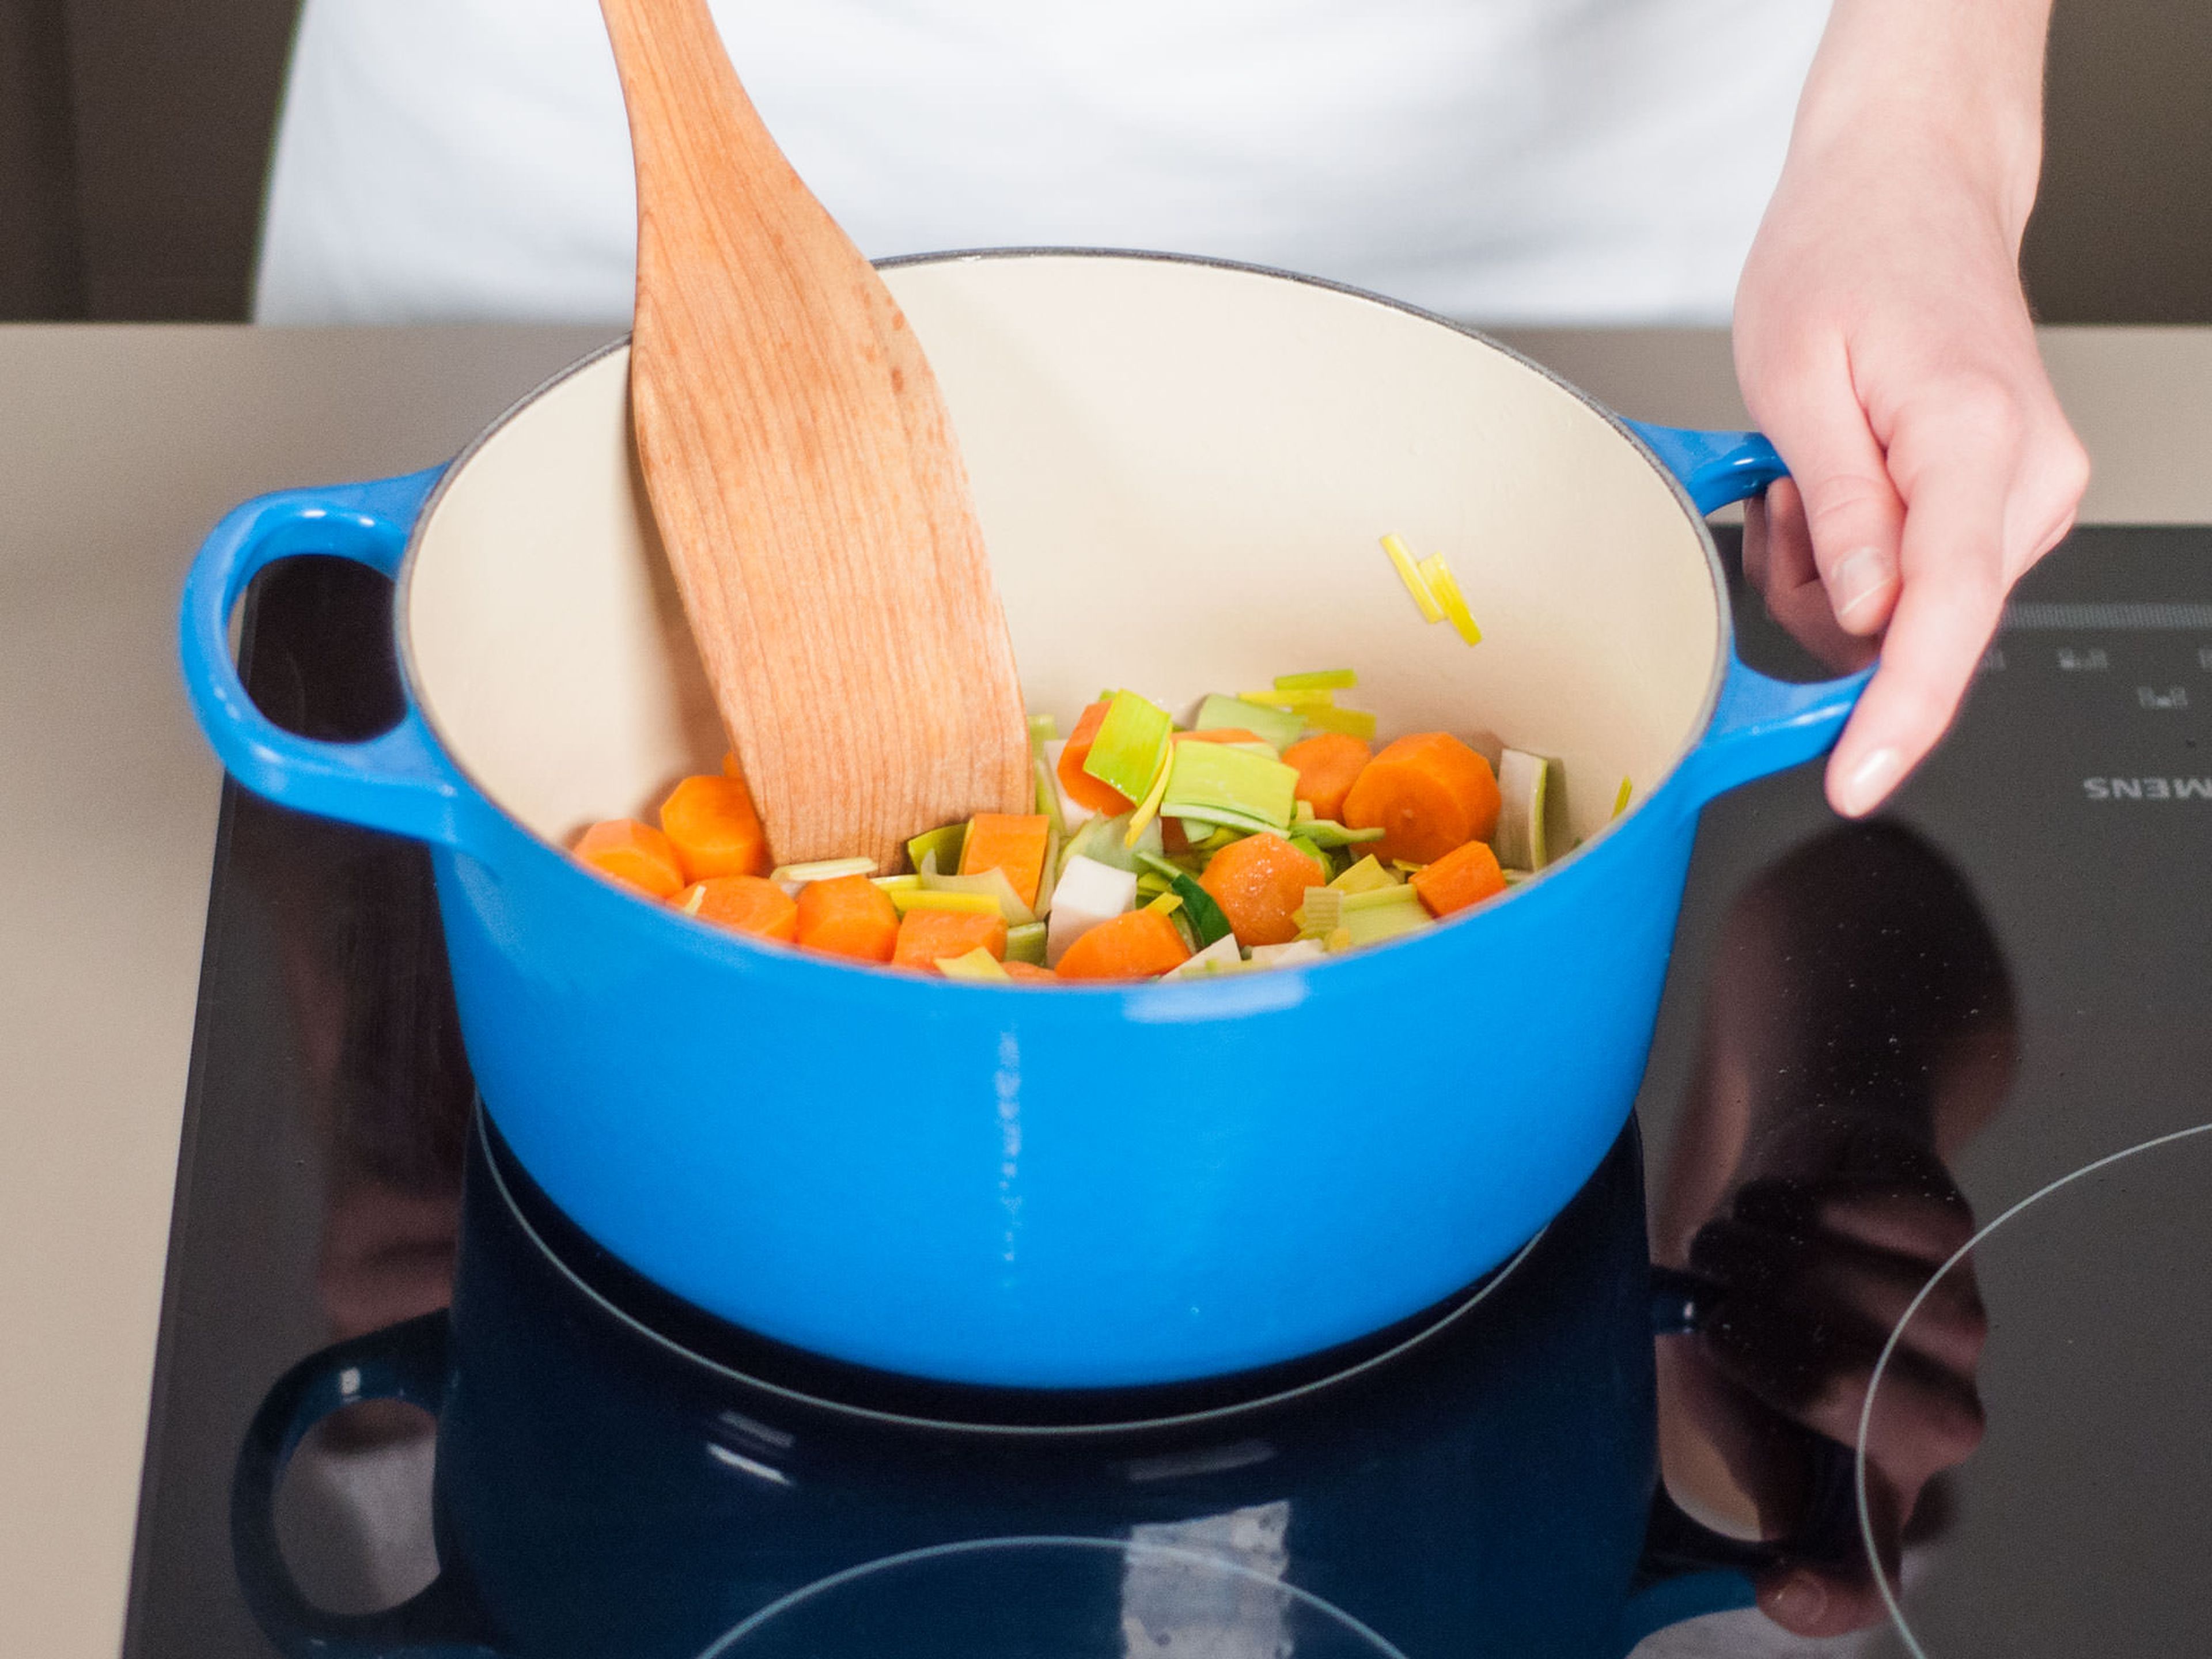 Backofen auf 180°C vorheizen. Für eine Gemüsebrühe etwas Pflanzenöl in einem großen Topf erhitzen. Lauch, Karotte, Sellerie und Petersilie hinzugeben und ca. 8 – 10 Min. andünsten bis das Gemüse weich ist.